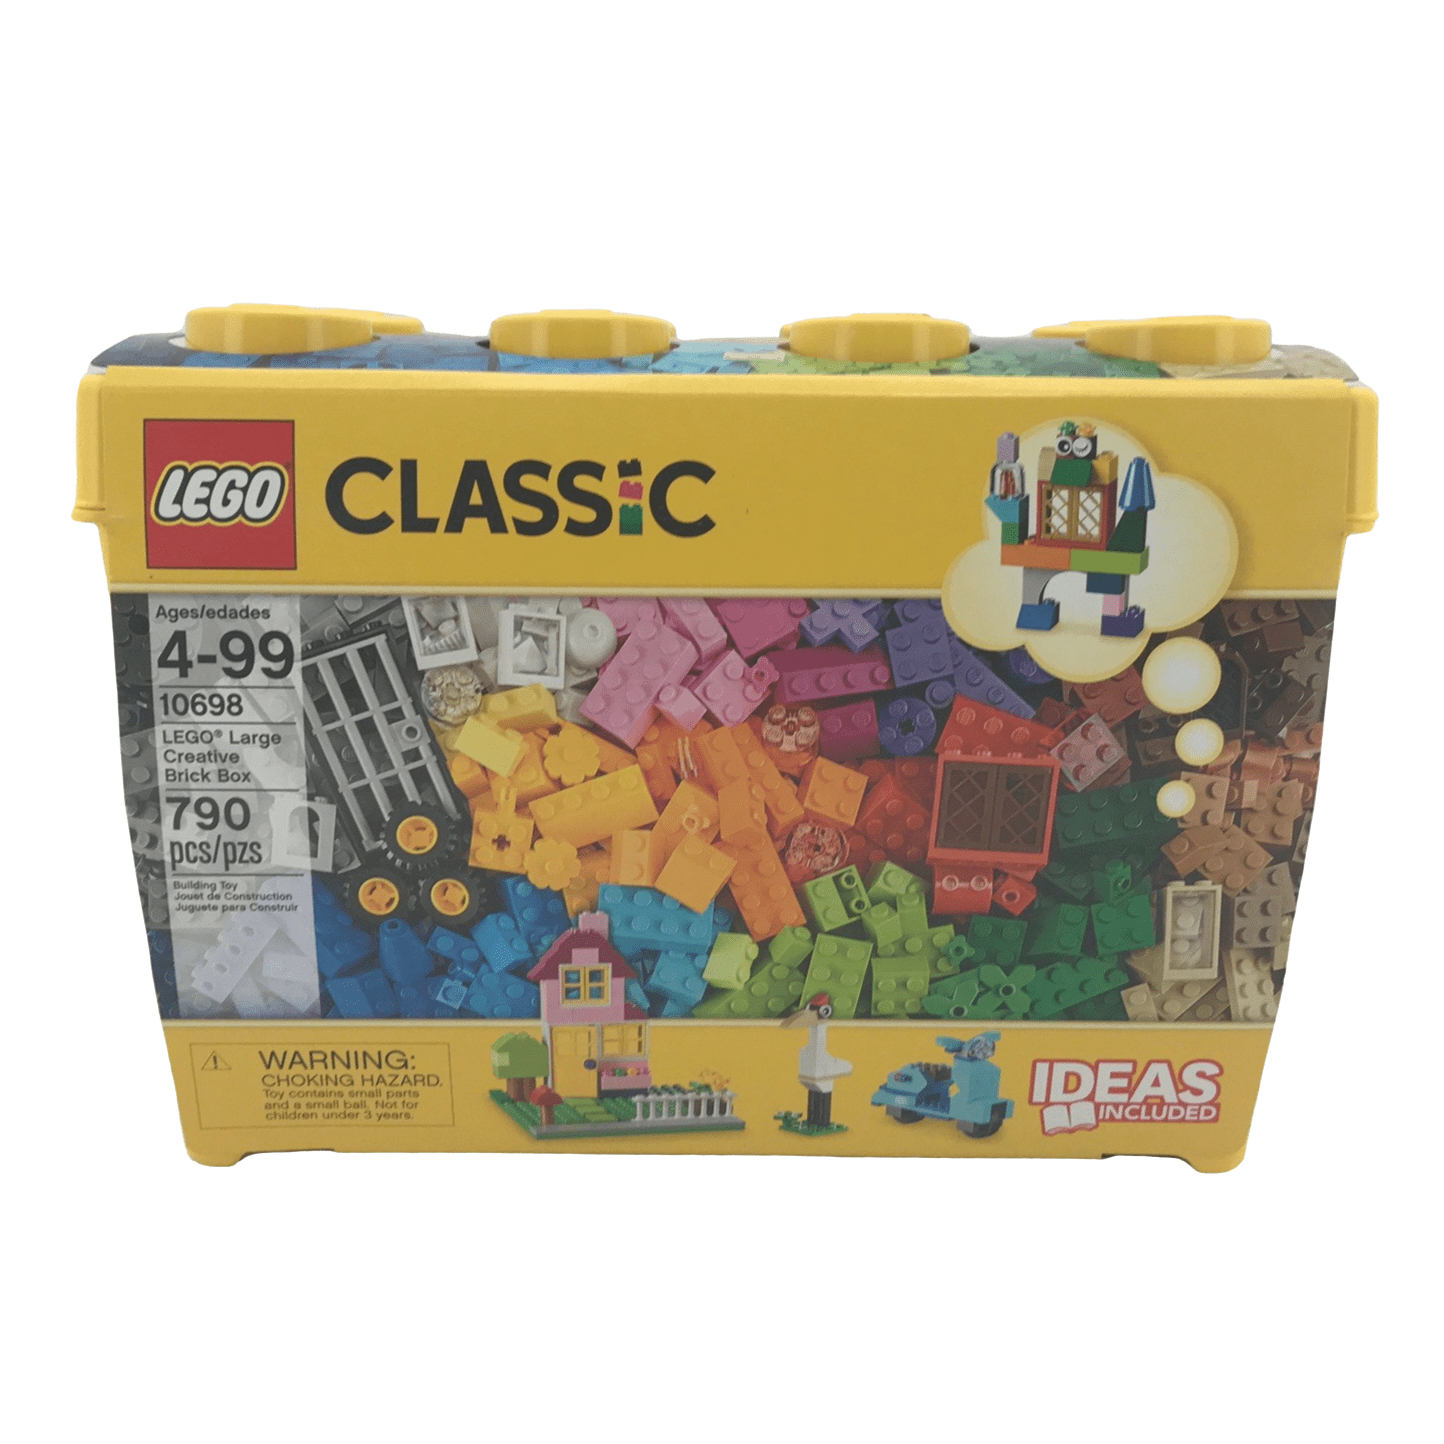 Lego Classic blocks 790 piece set with storage case LIKE NEW